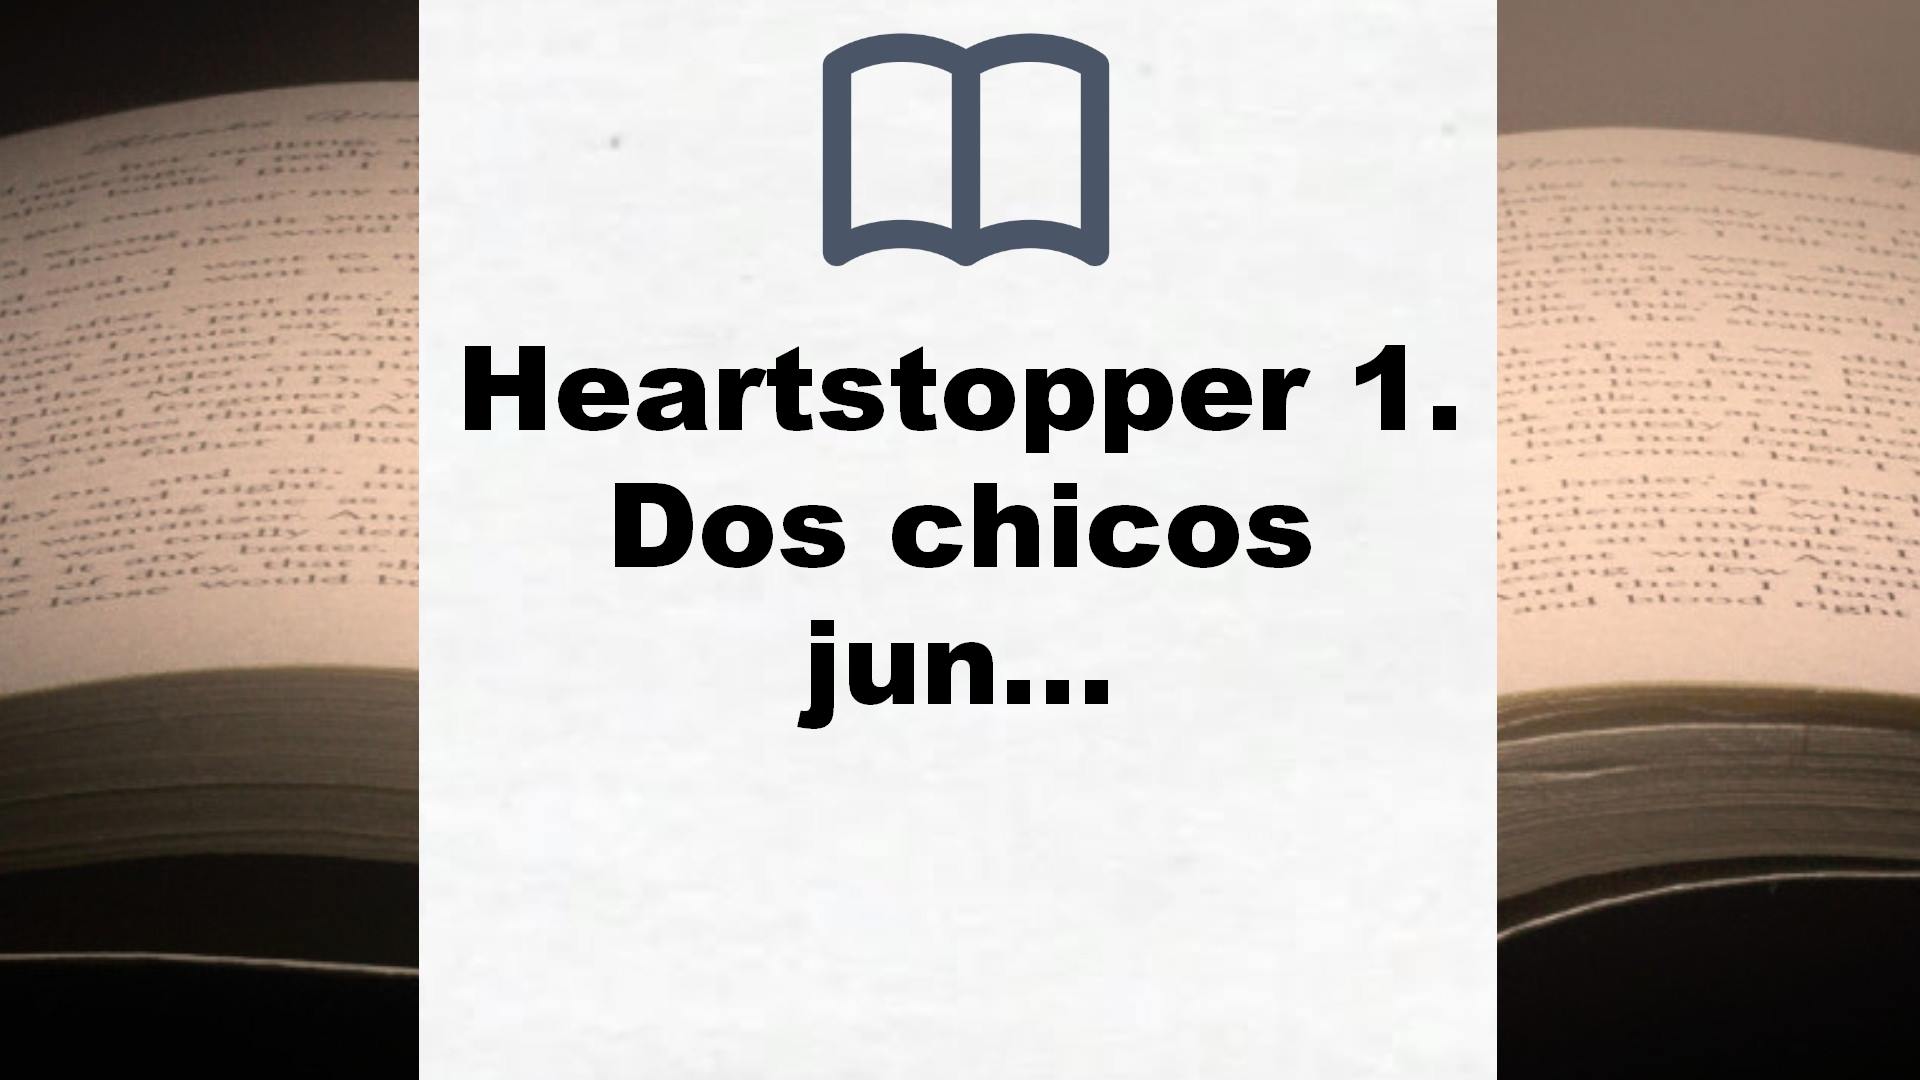 Heartstopper 1. Dos chicos juntos (Ficción) – Reseña del libro